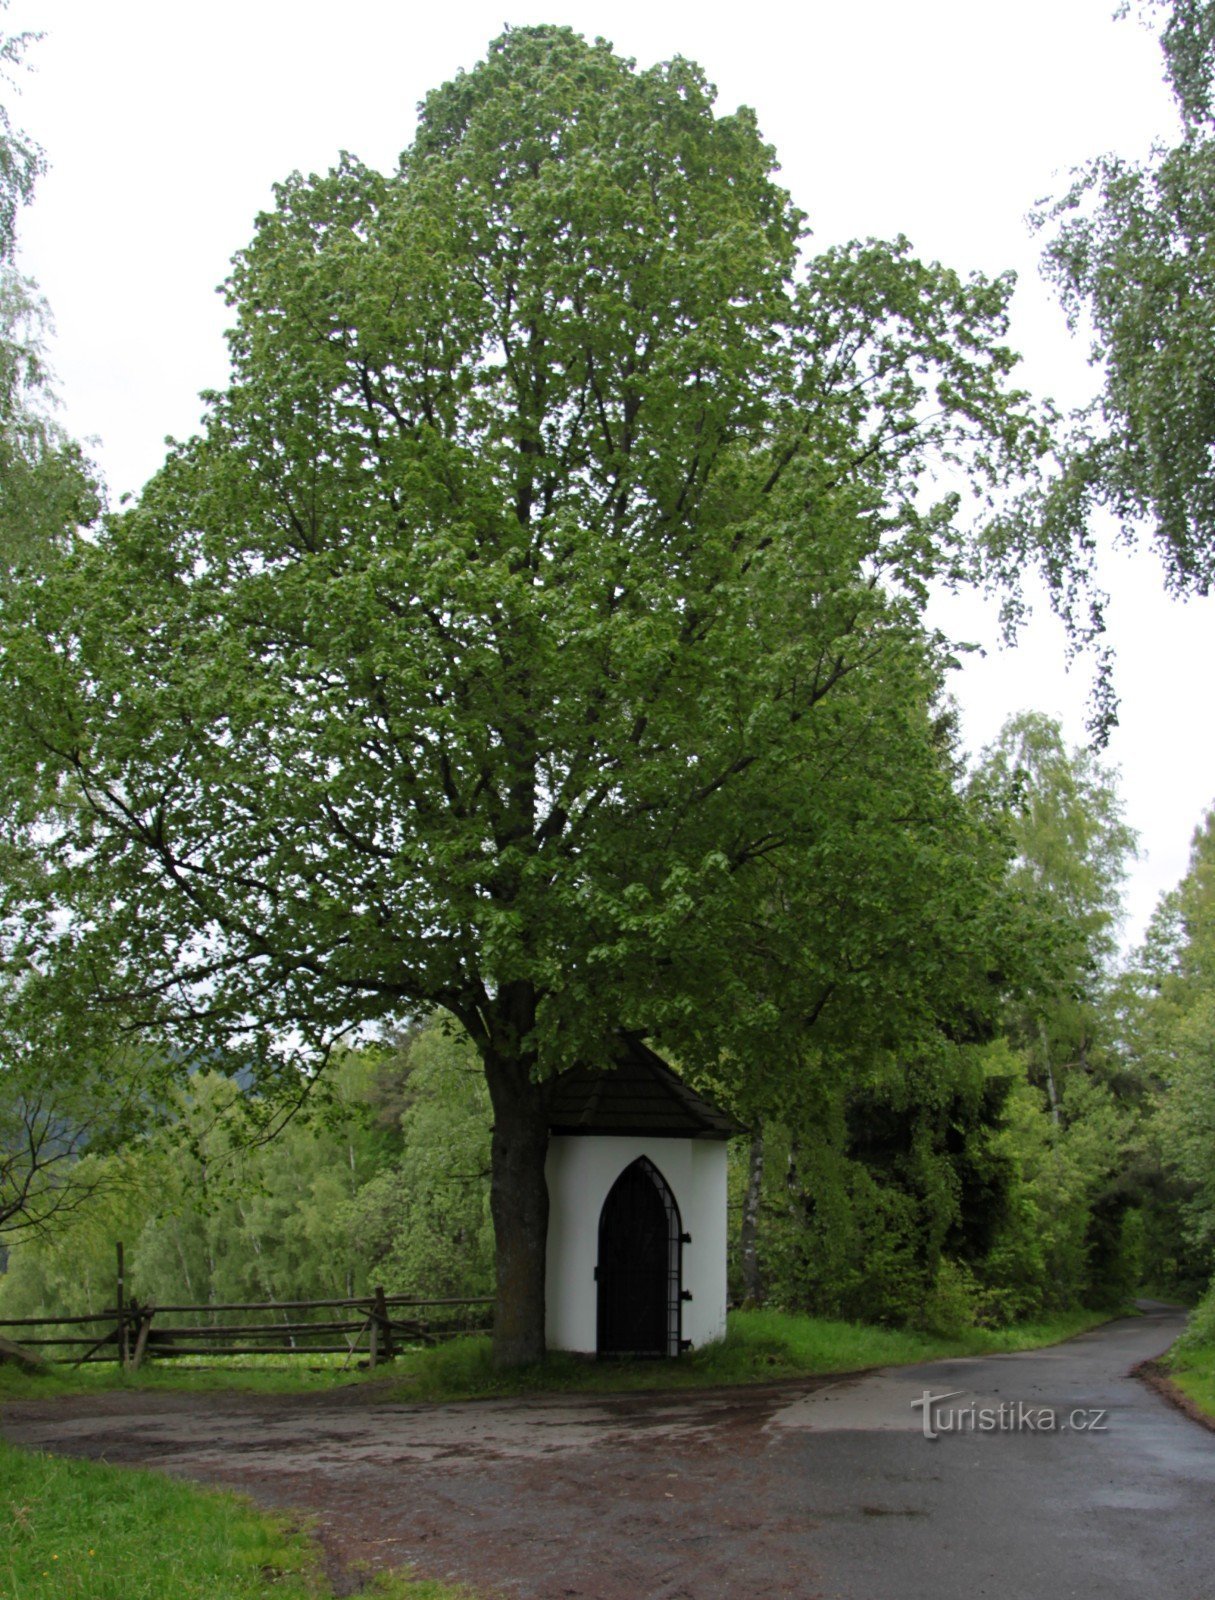 Chapelle au bord de la route près de Červená